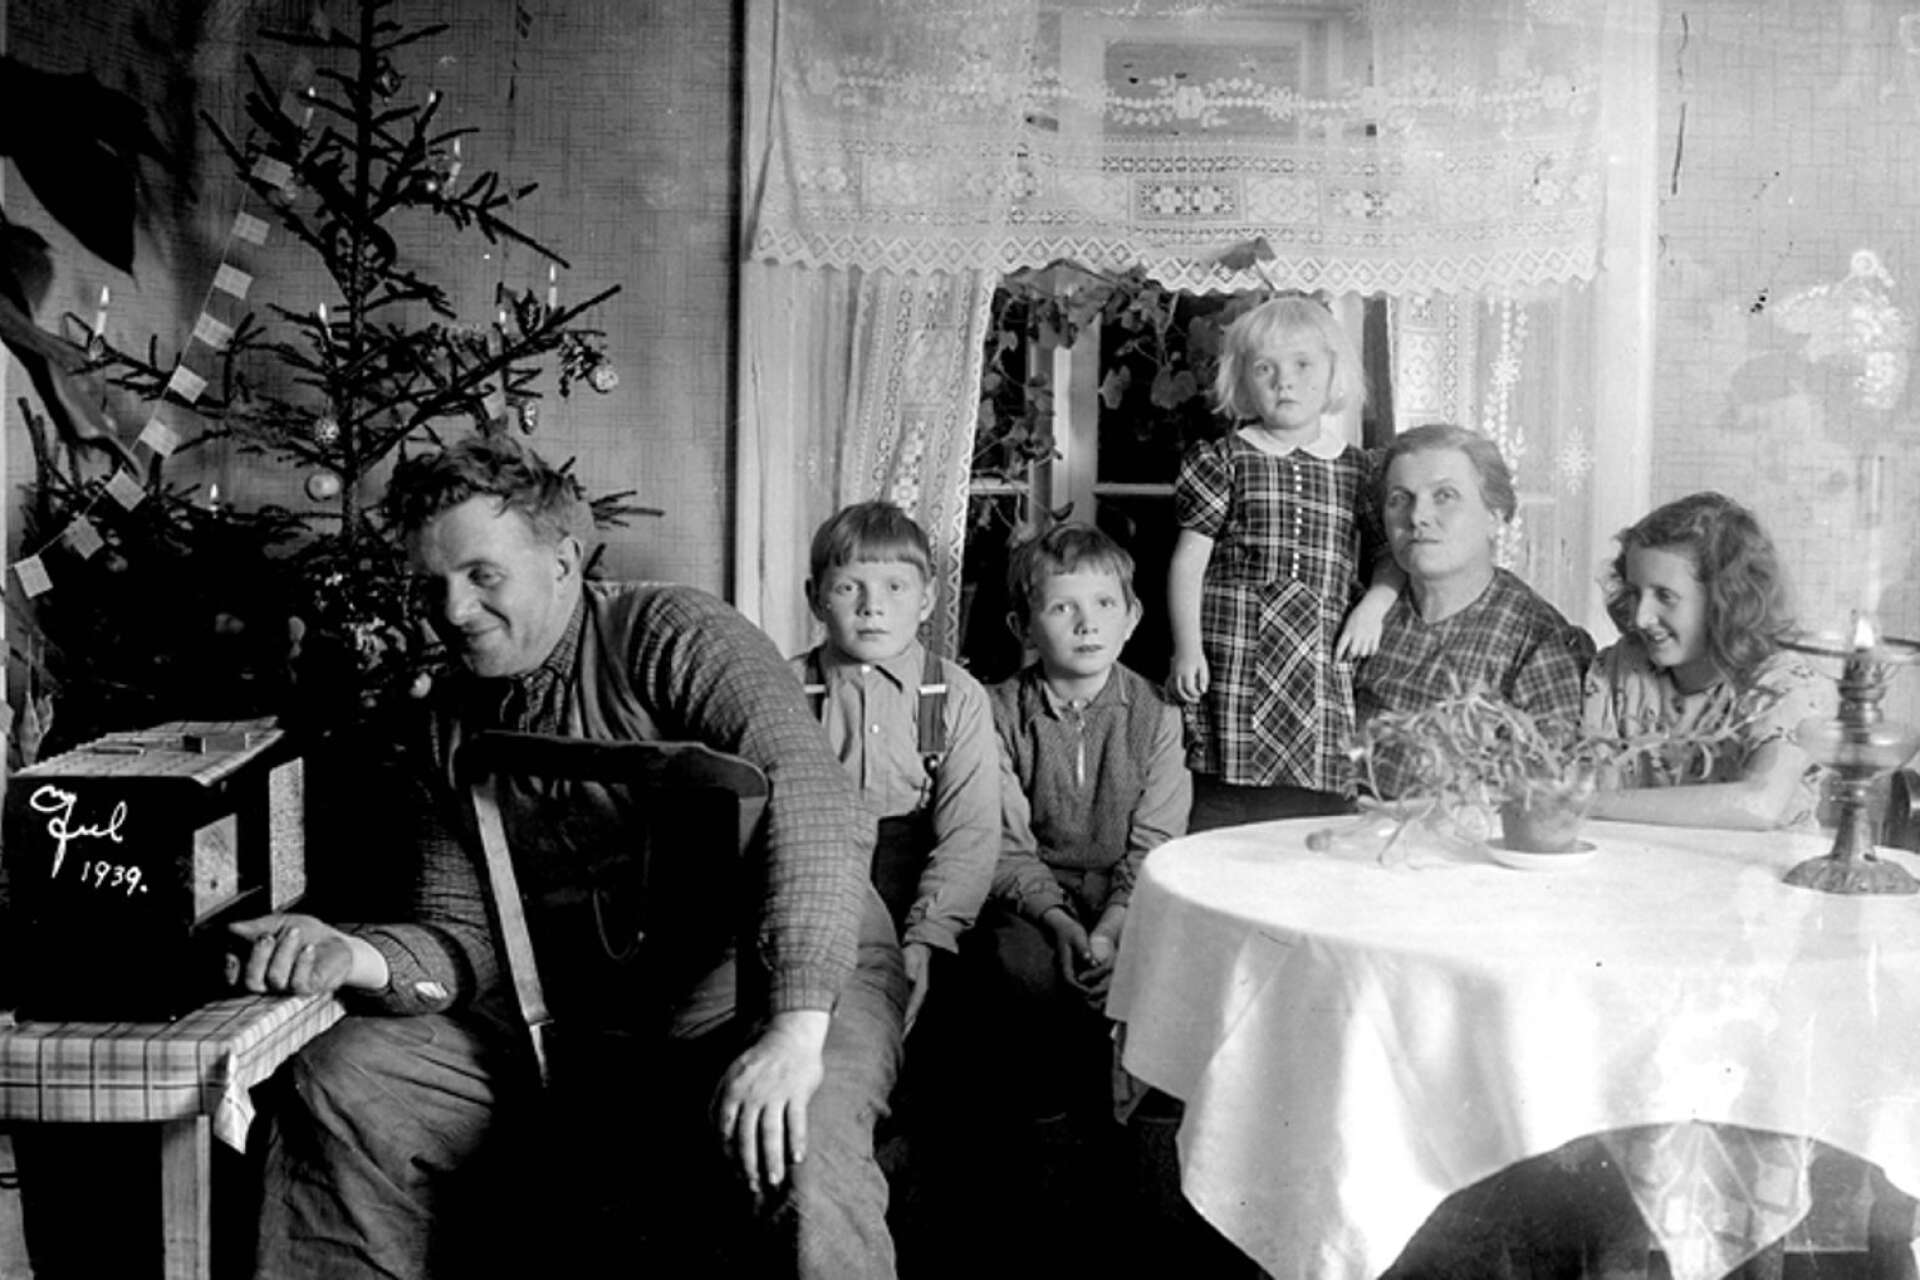 Julgran och radioteater är några av de jultraditioner som Karl-Erik Dahlgren minns från sin barndoms 1930-tal. Personerna på bilden har inget samband med artikeln.